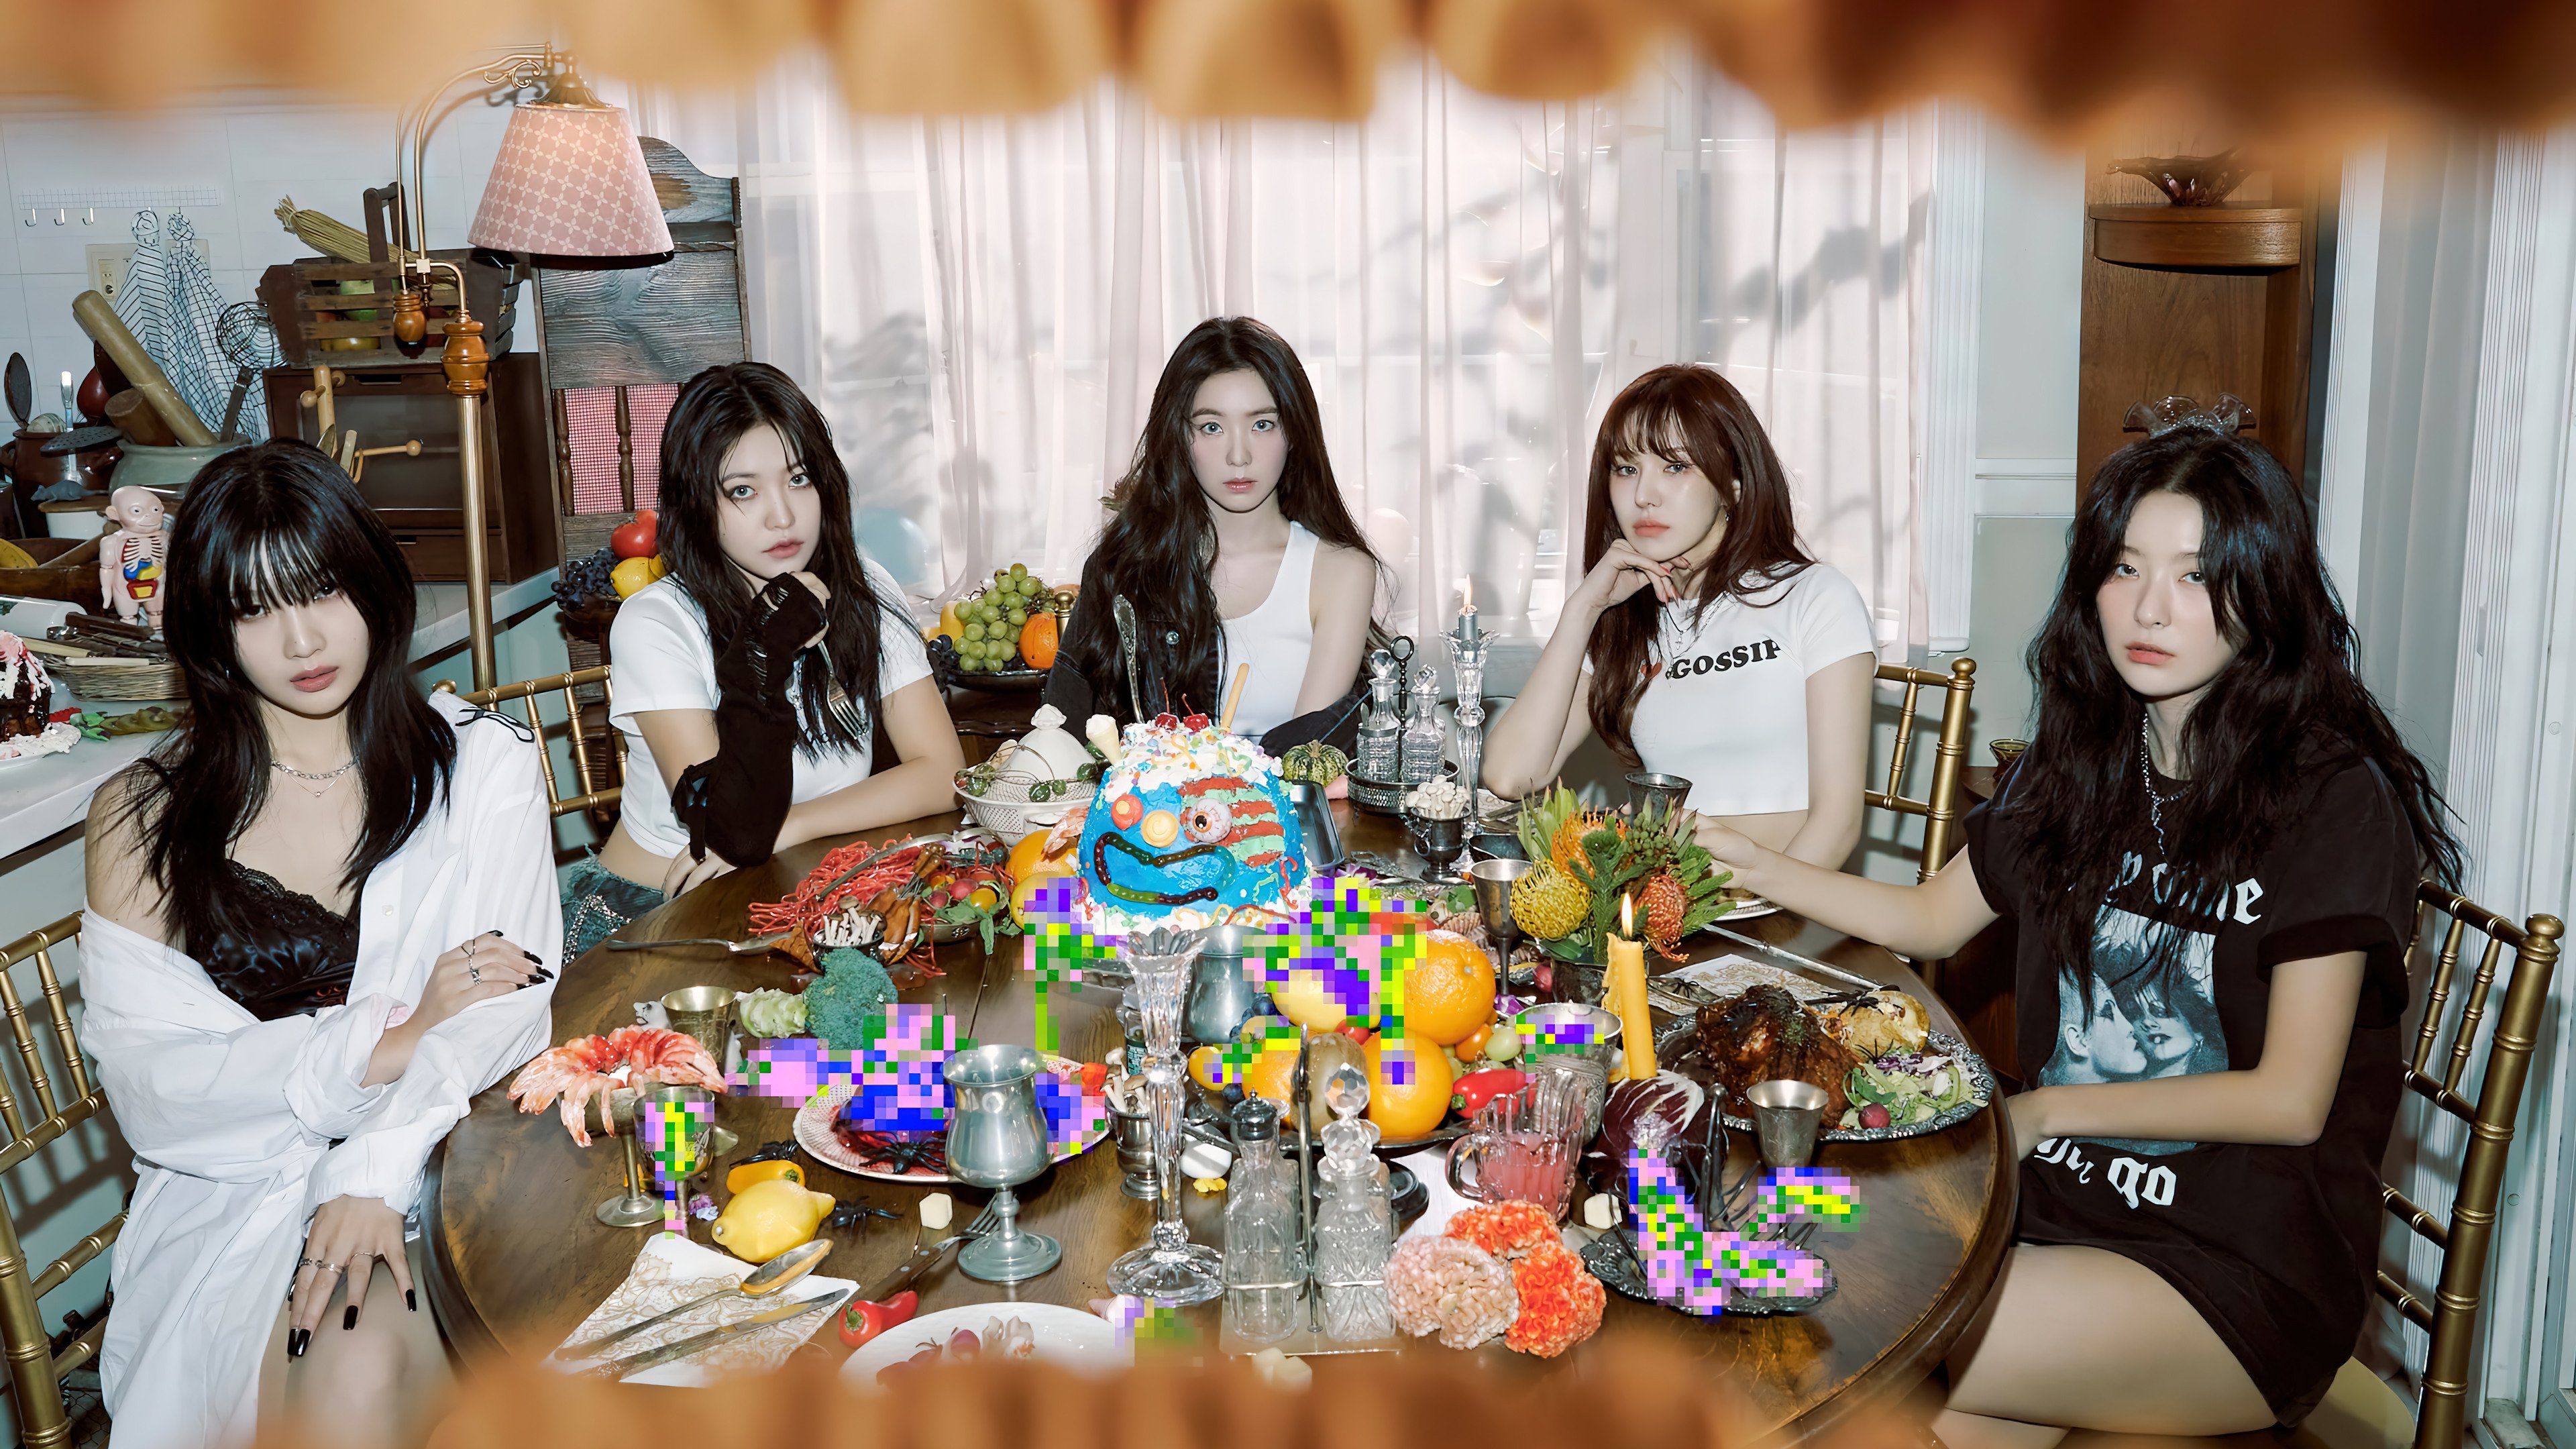 Fondos de pantalla Miembros de Red Velvet Birthday